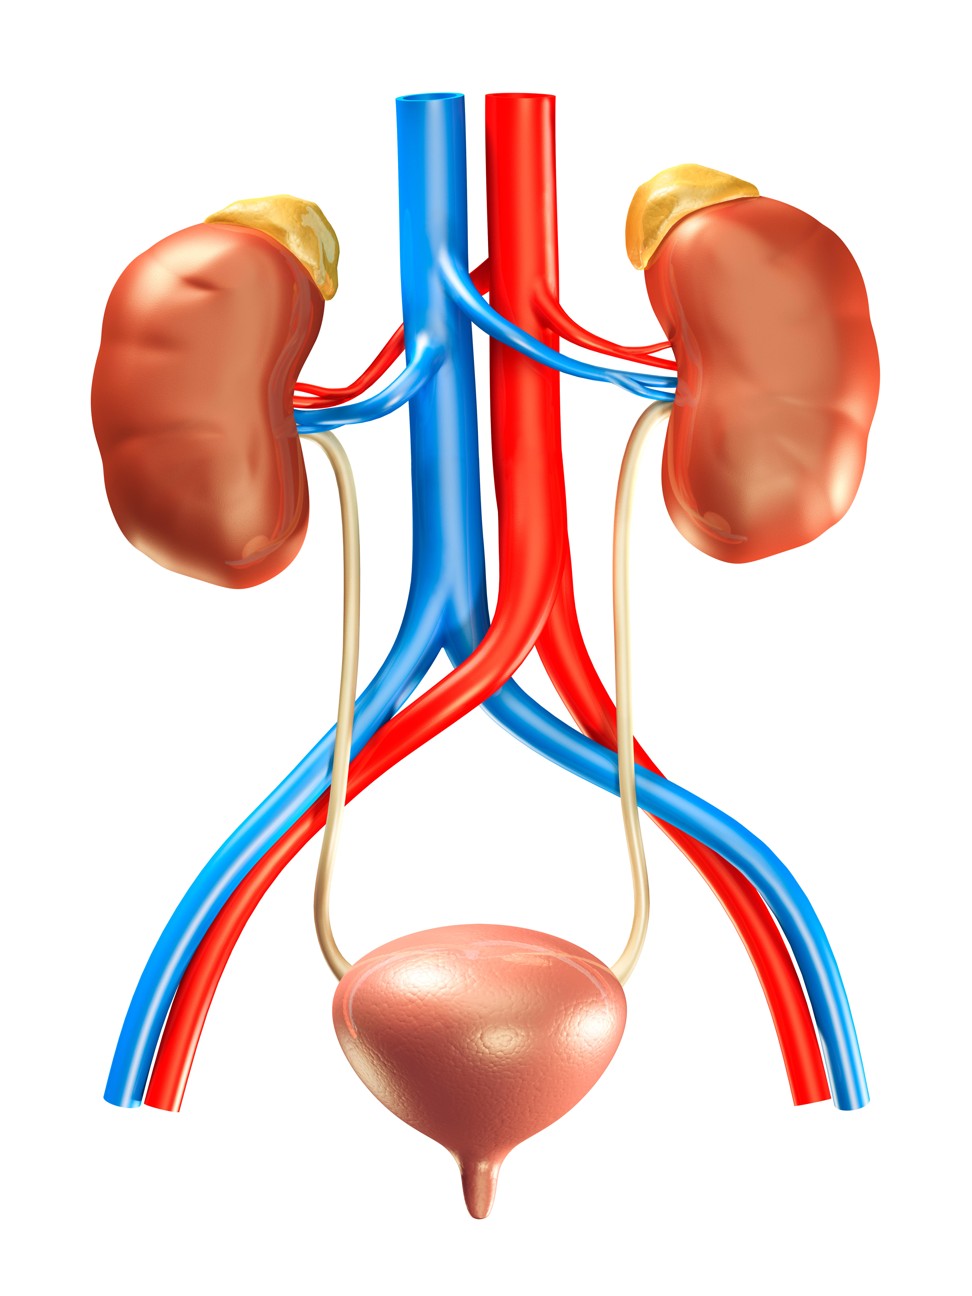 Kidneys, adrenal glands, the bladder and arteries. Illustration: Alamy